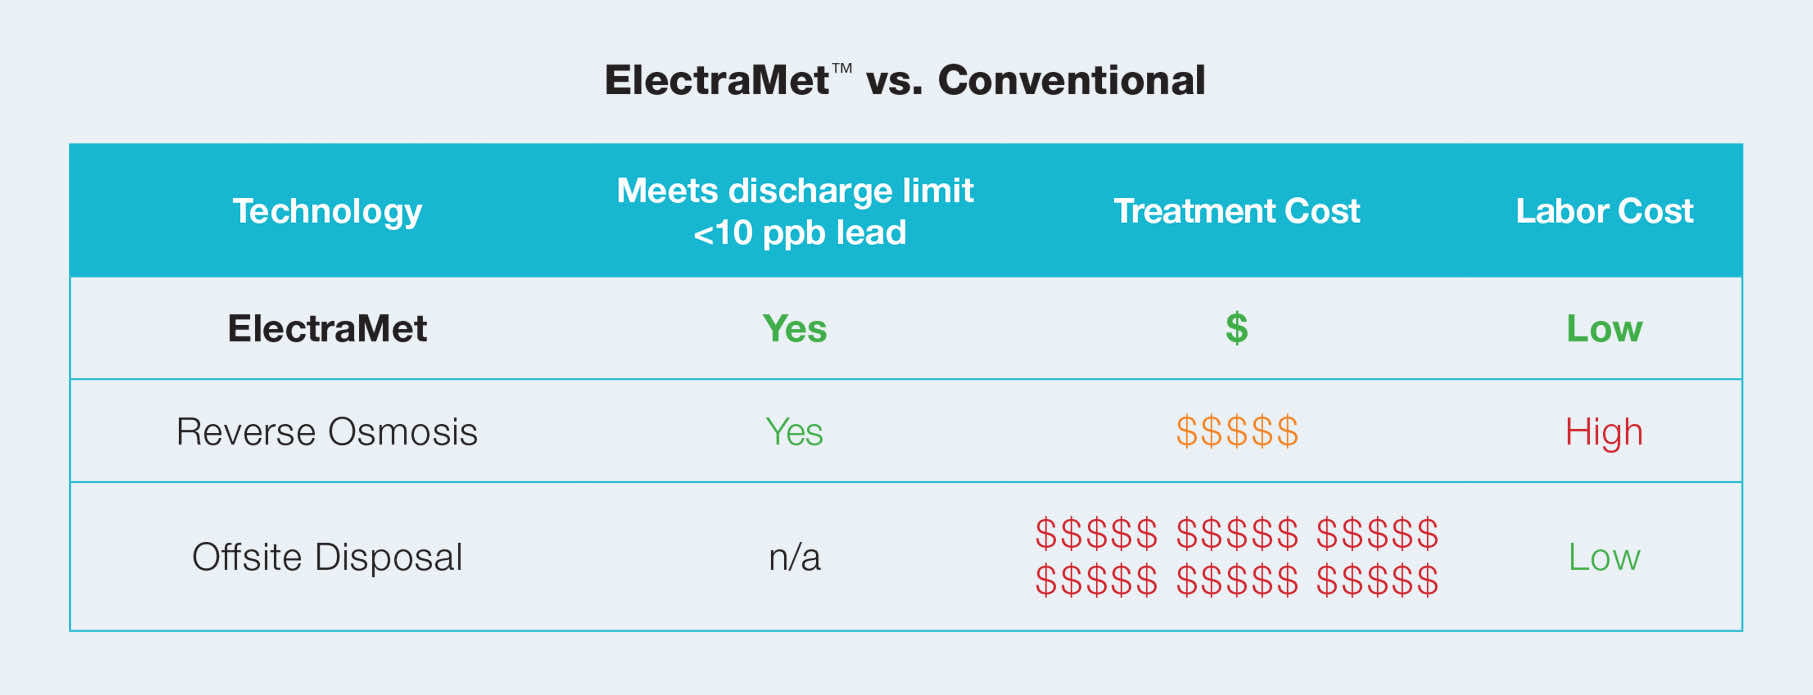 ElectraMet™ vs. Conventional